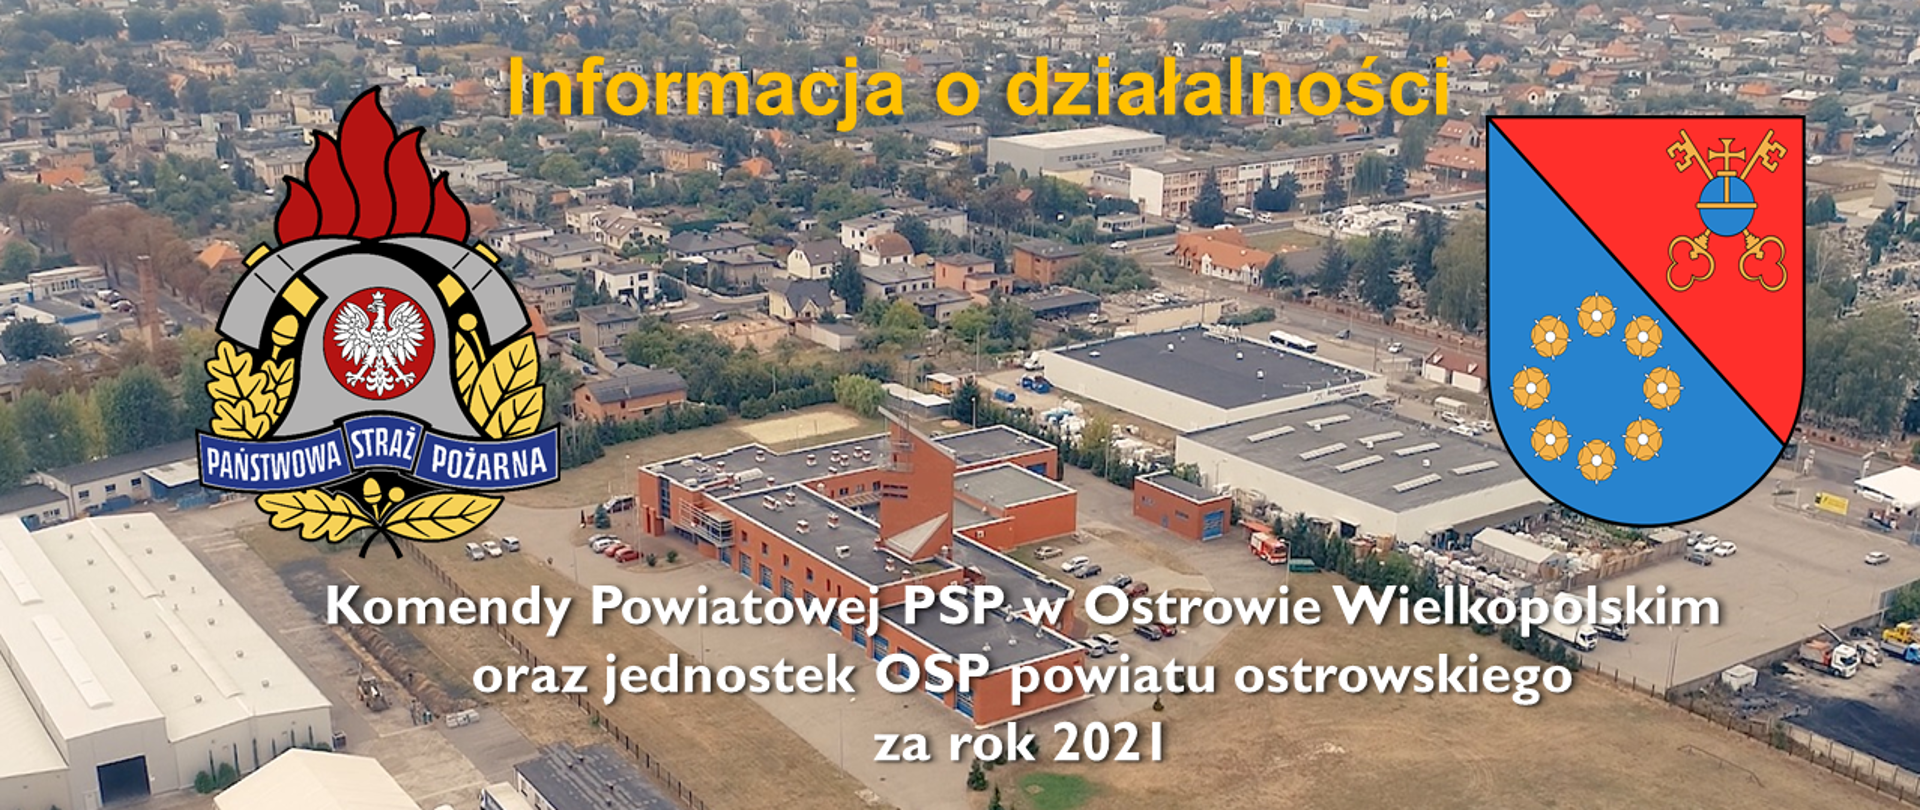 Slajd tytułowy prezentacji podsumowującej działalność KP PSP w roku 2021, zawierający panoramę KP PSP, logo PSP i herb powiatu ostrowskiego.